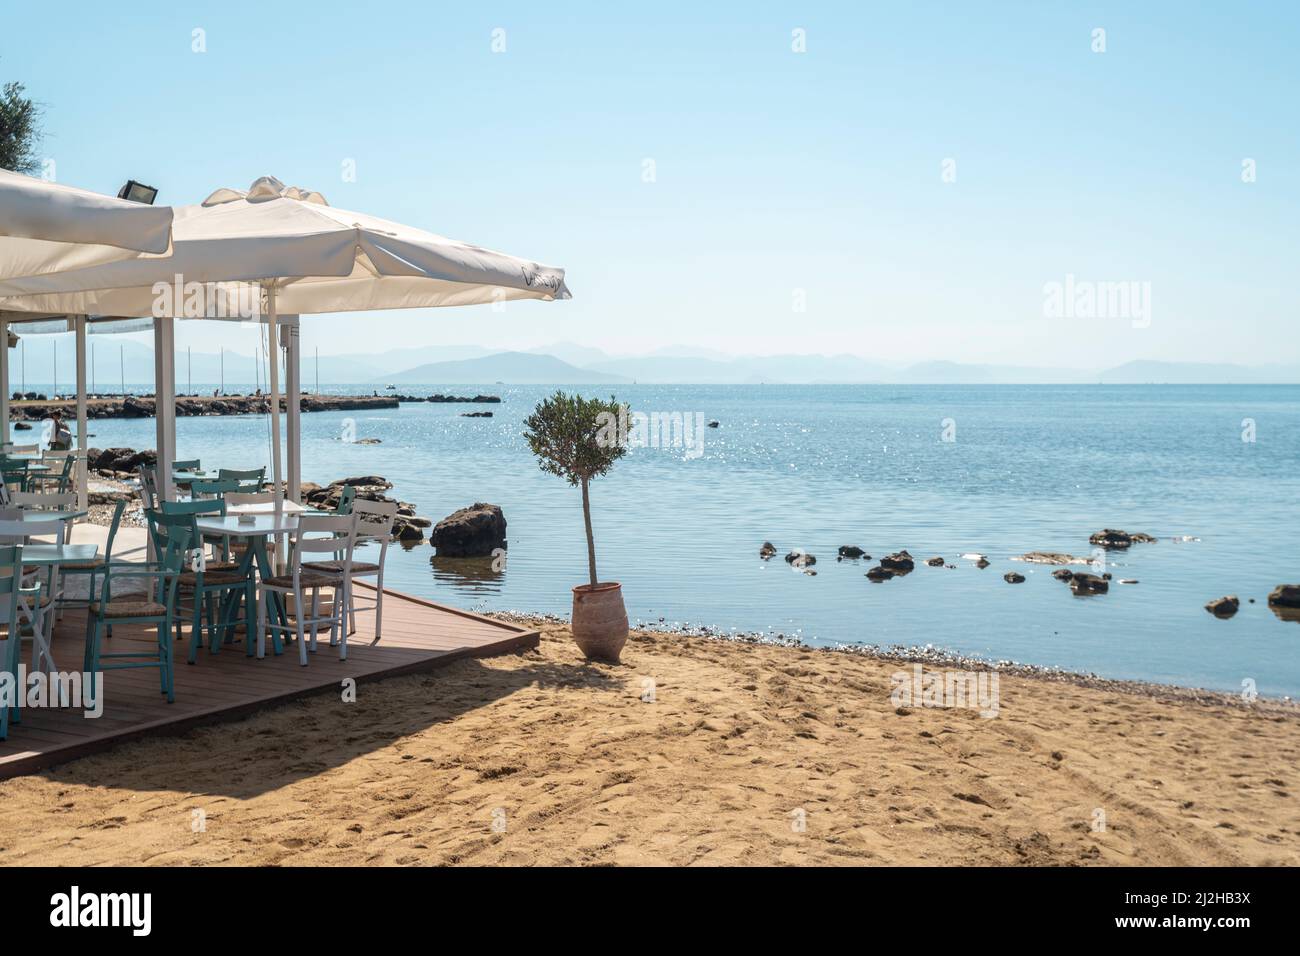 Grecia, Corfú isla, Restaurante en la playa de arena Foto de stock